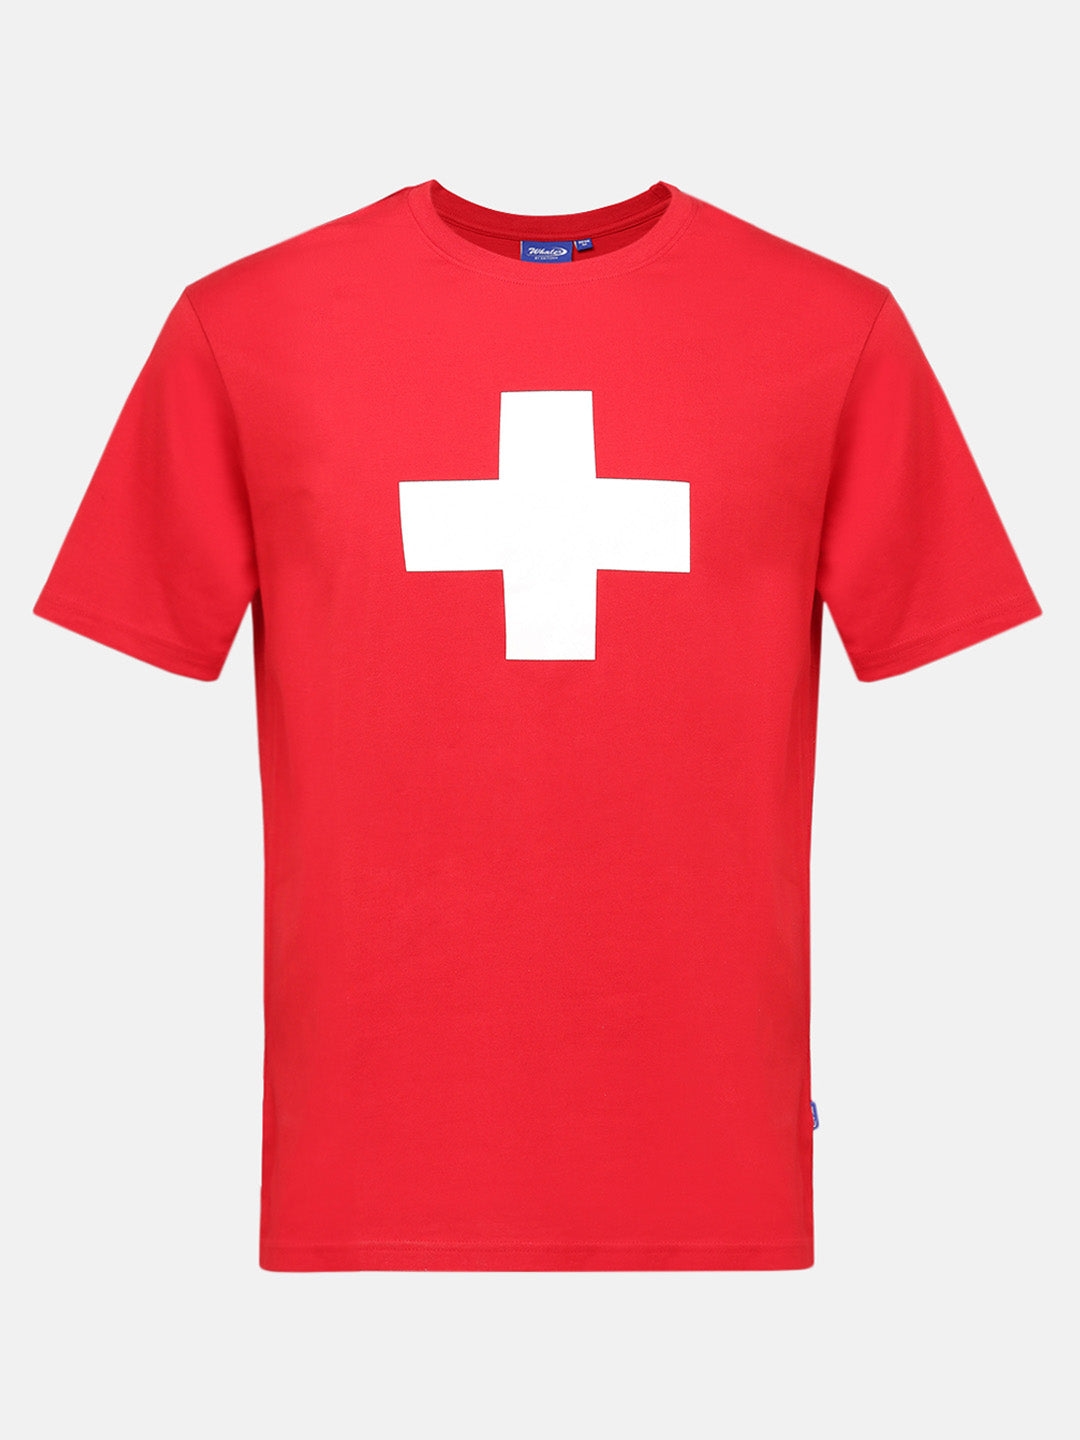 Helvetica T-Shirt 2036